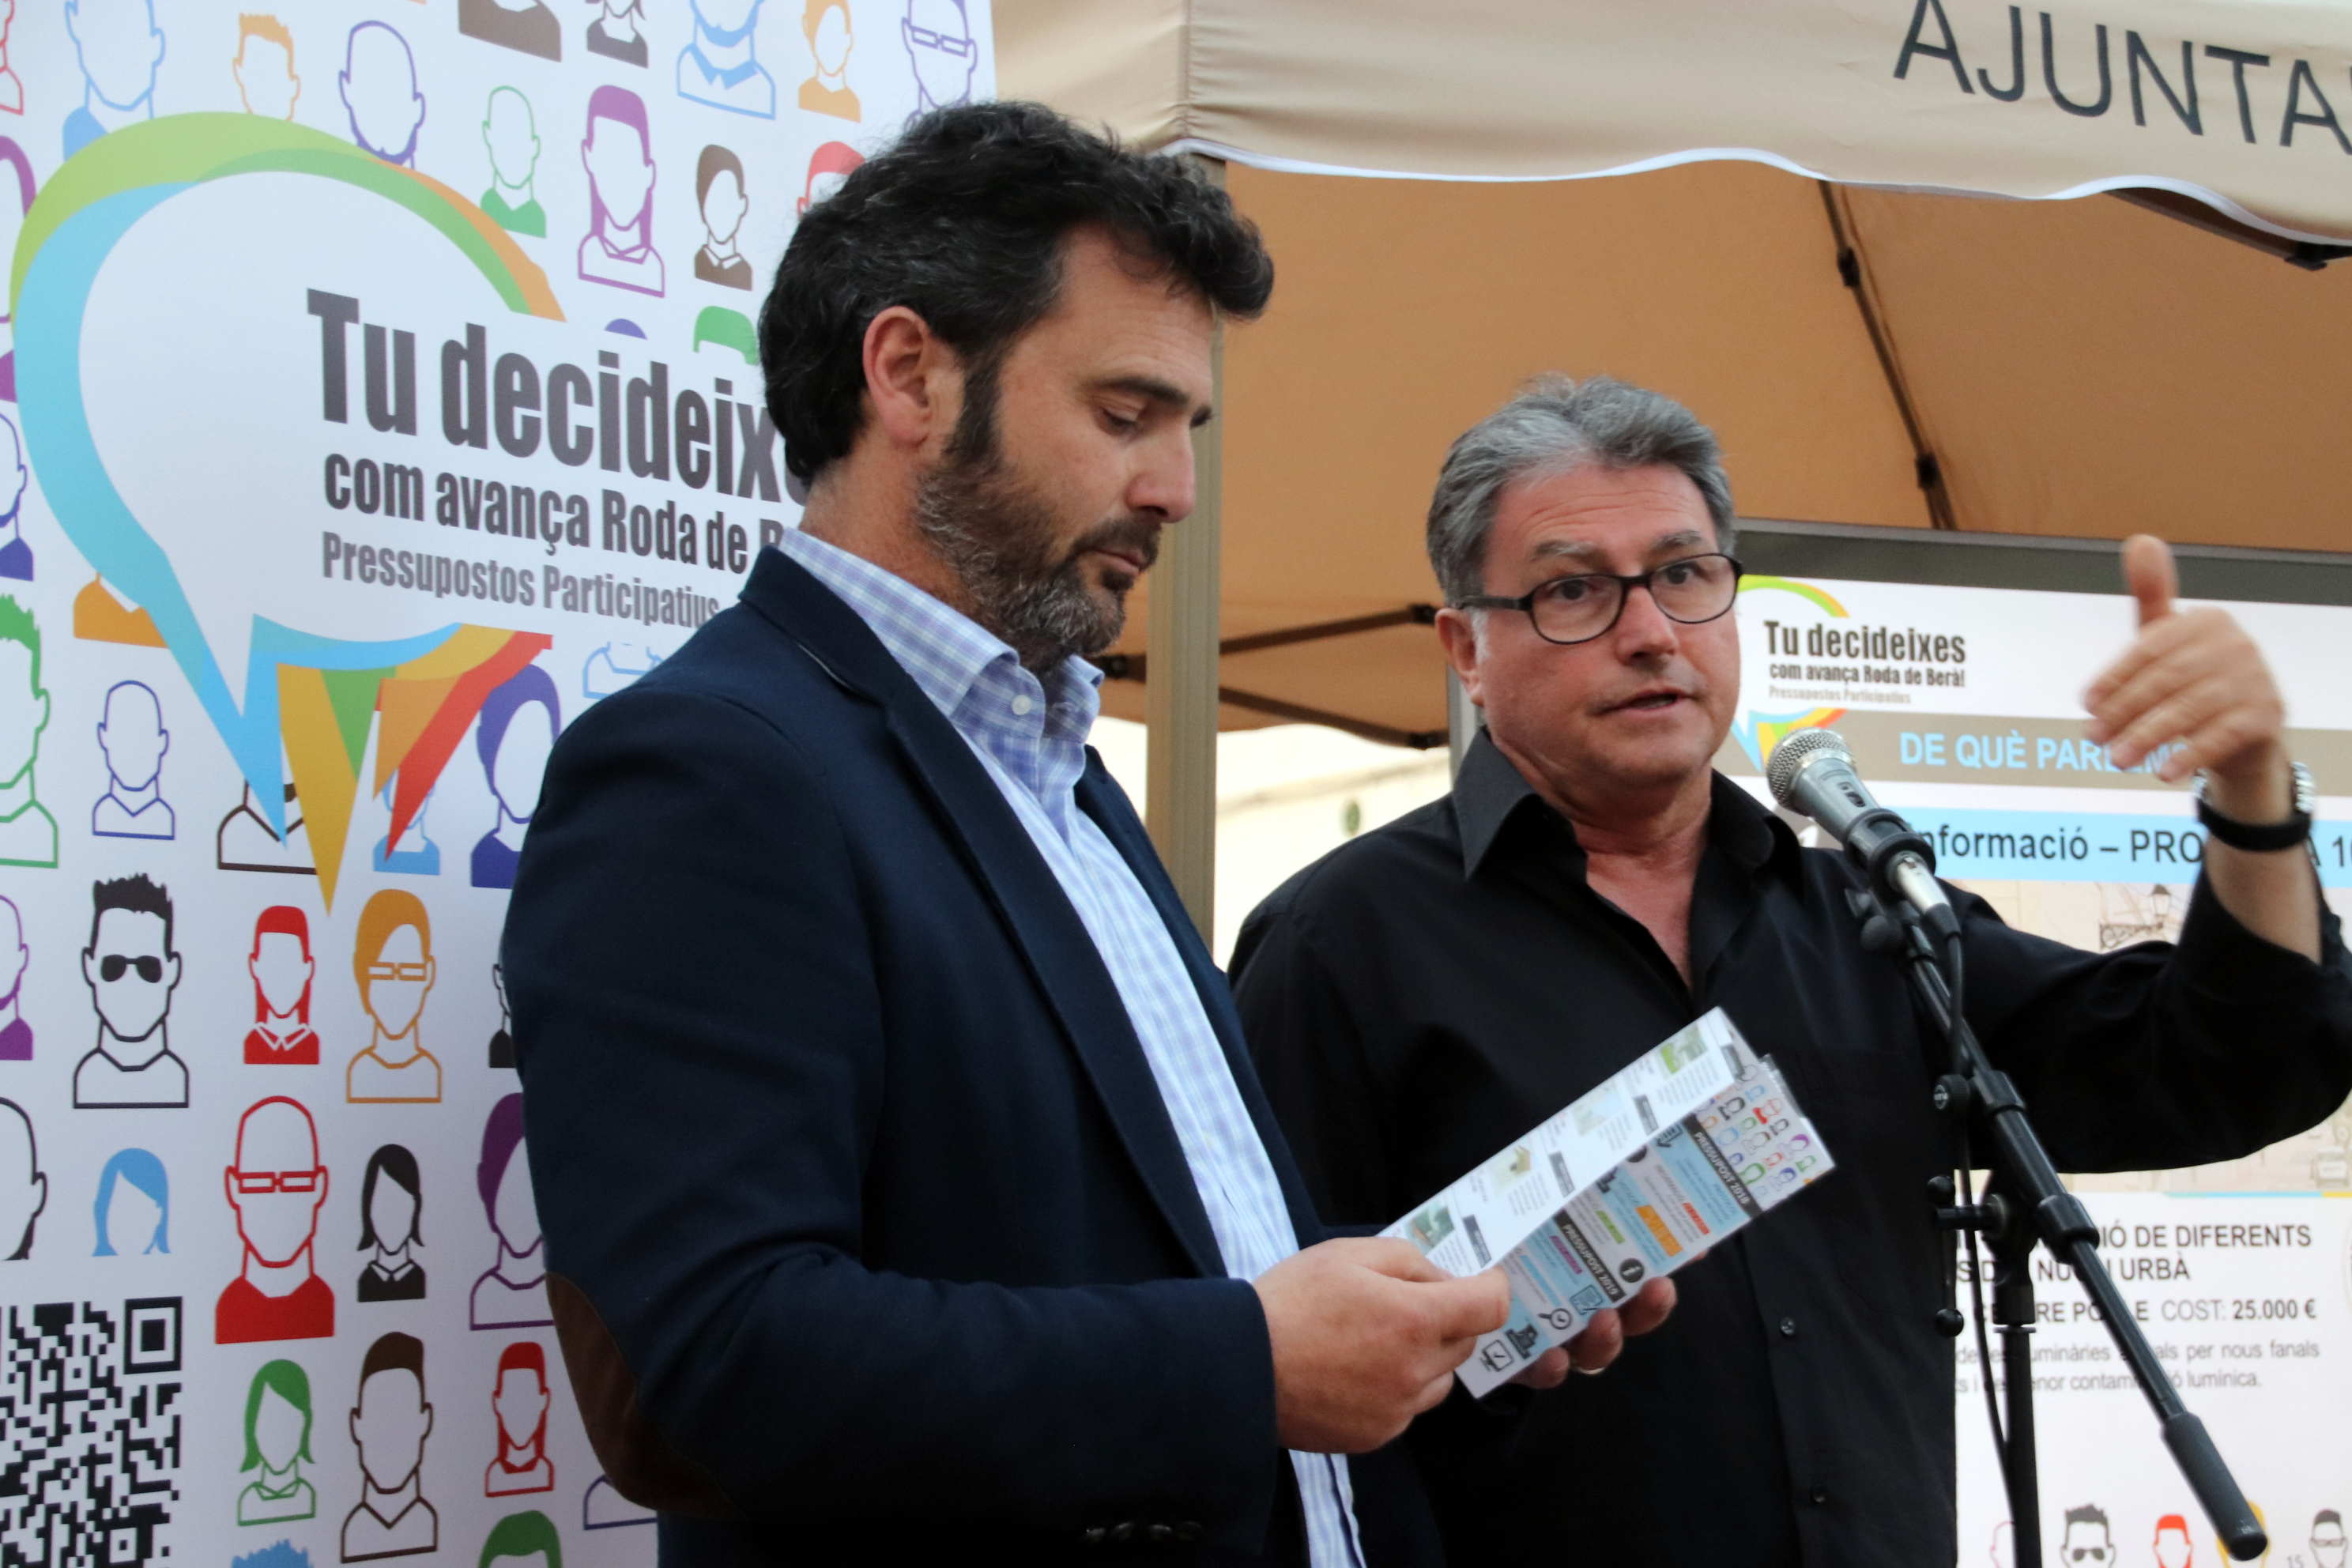  L’Ajuntament presenta en un acte públic els primers Pressupostos Participatius de Roda de Berà 